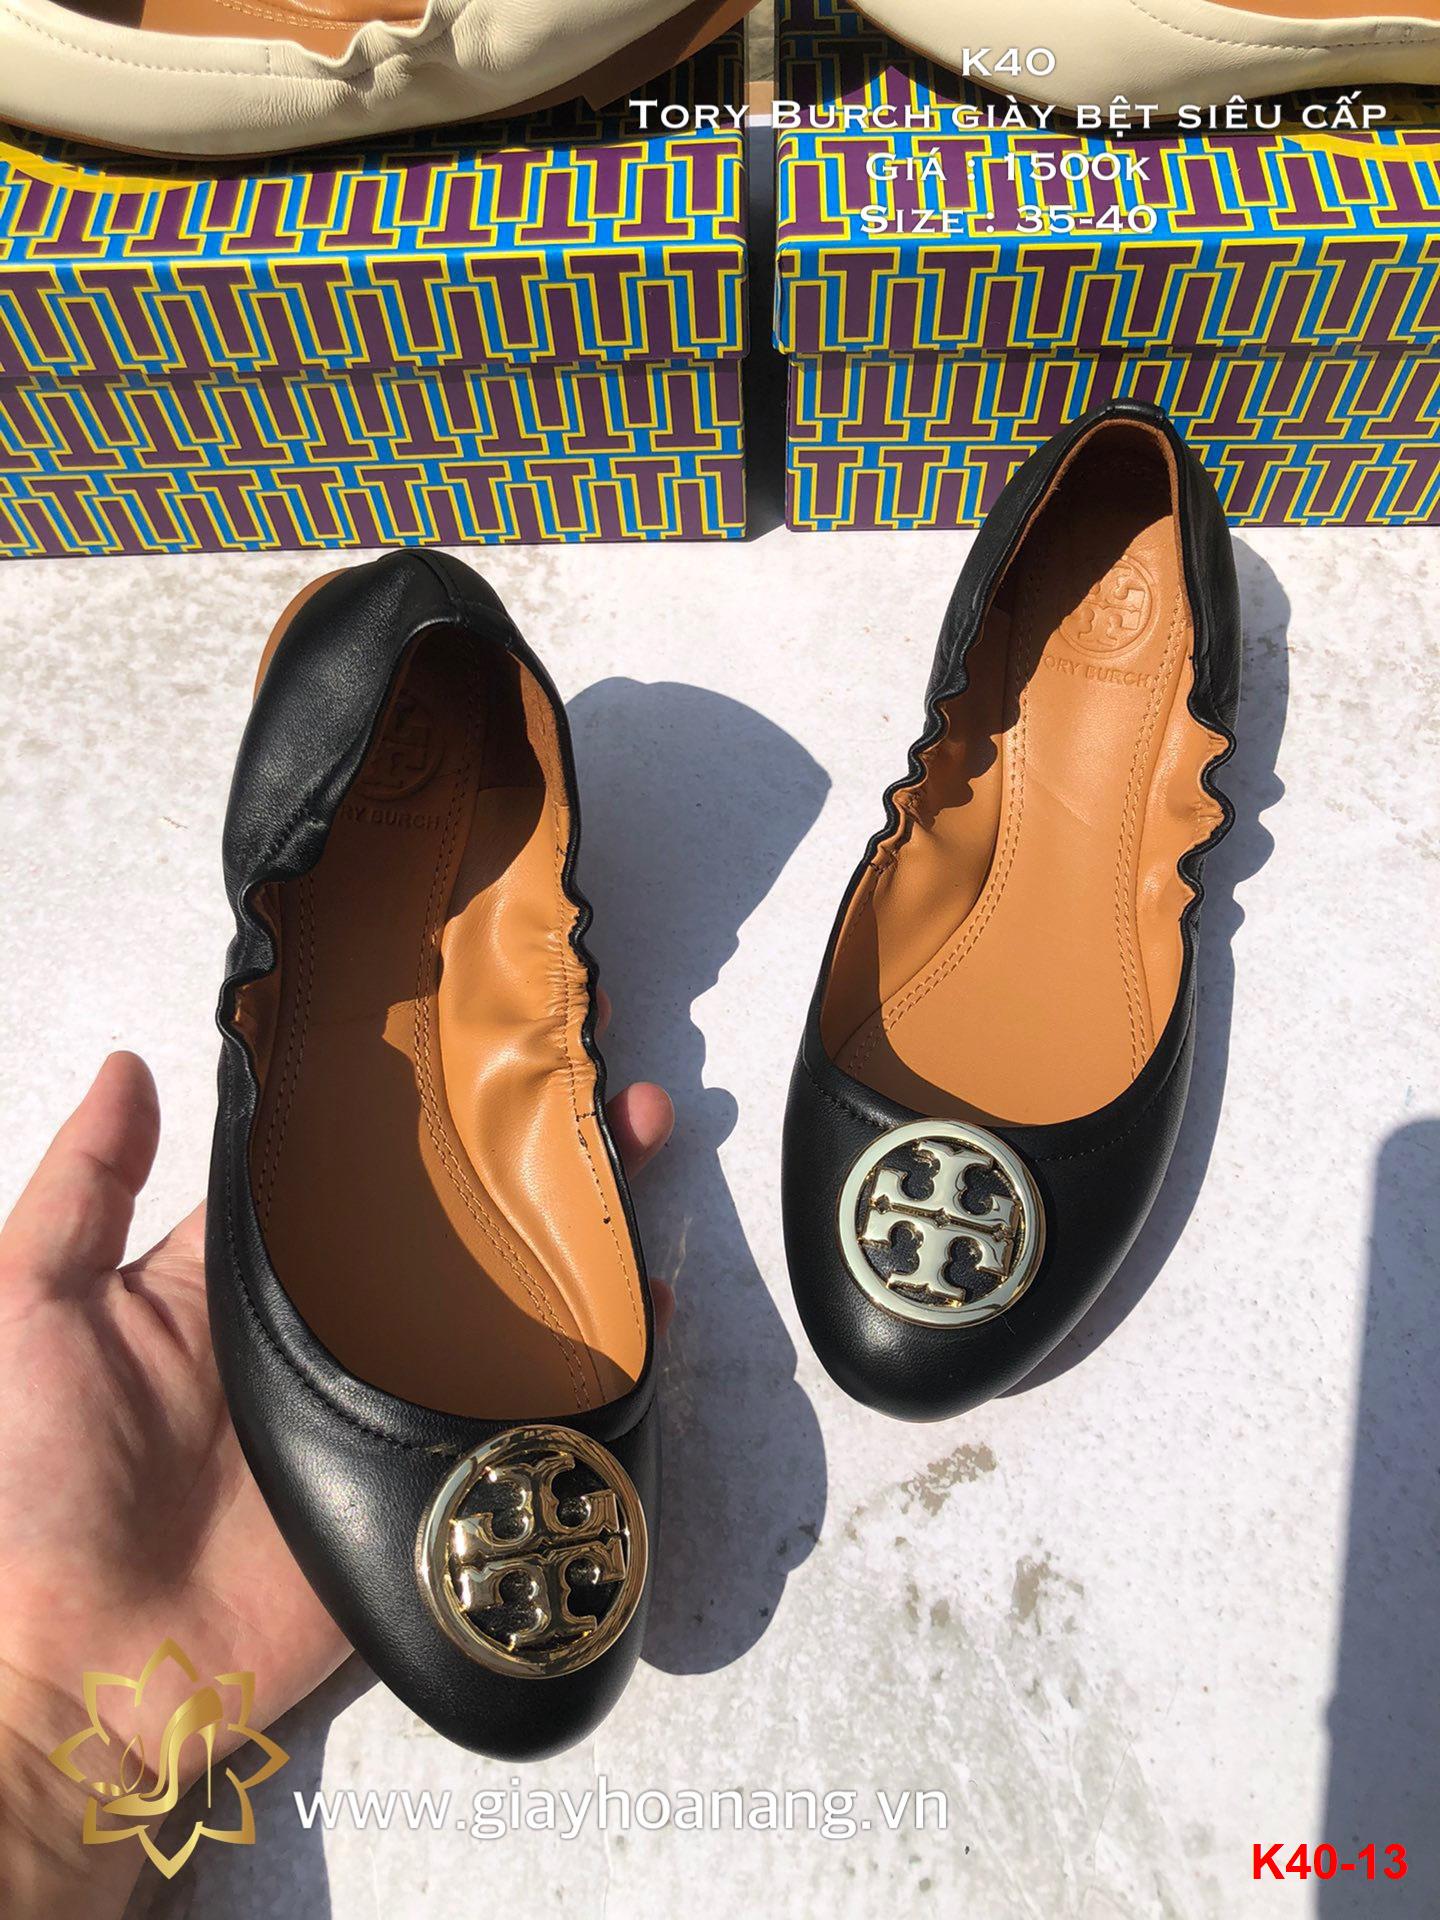 K40-13 Tory Burch giày bệt siêu cấp Hoa Nắng - Chúng tôi tin vào sức mạnh  của chất lượng